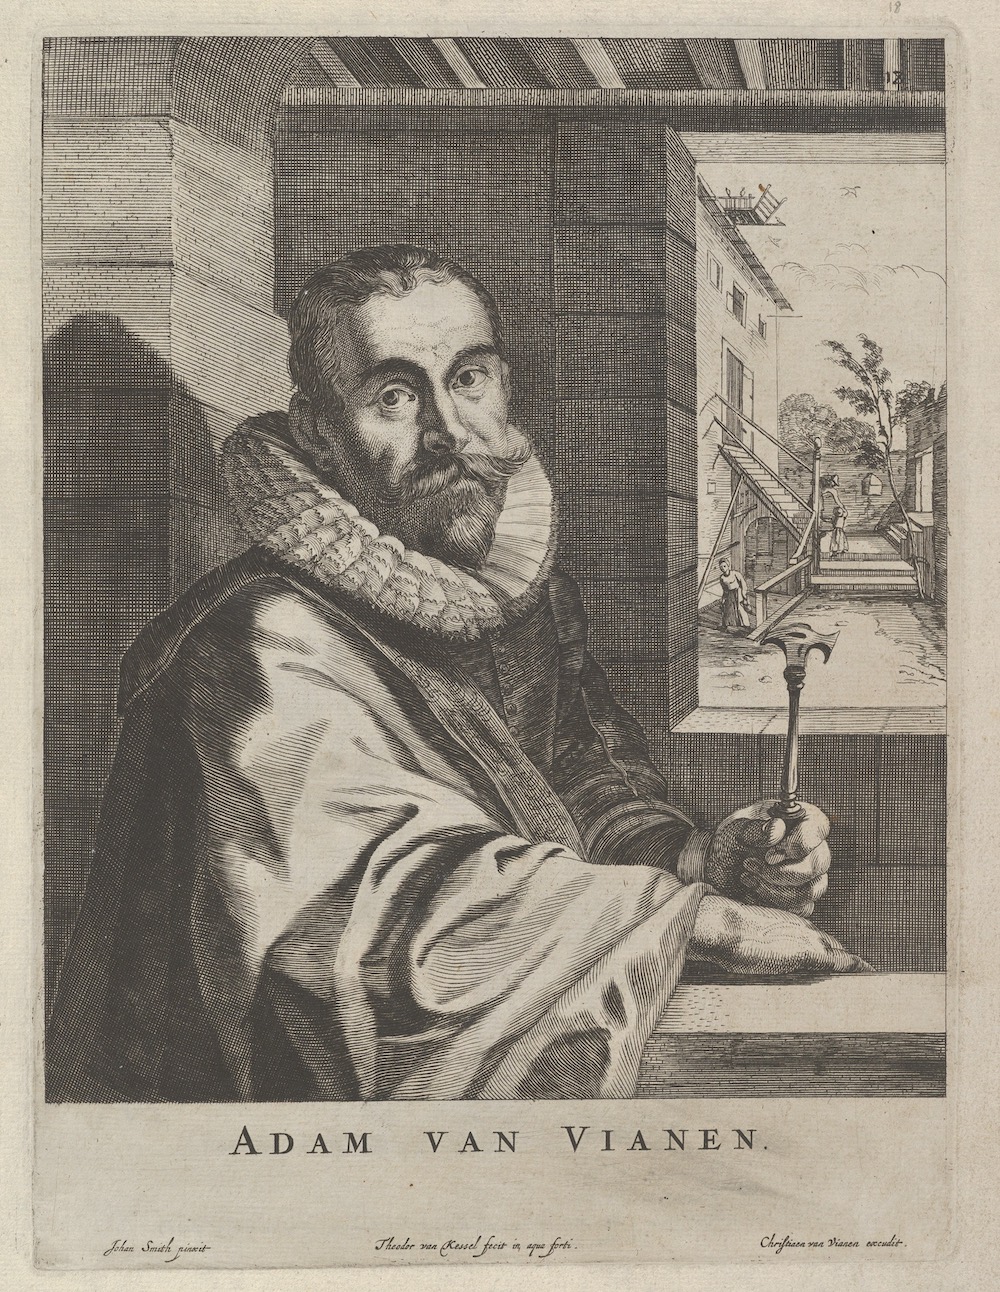 Adam van Vianen